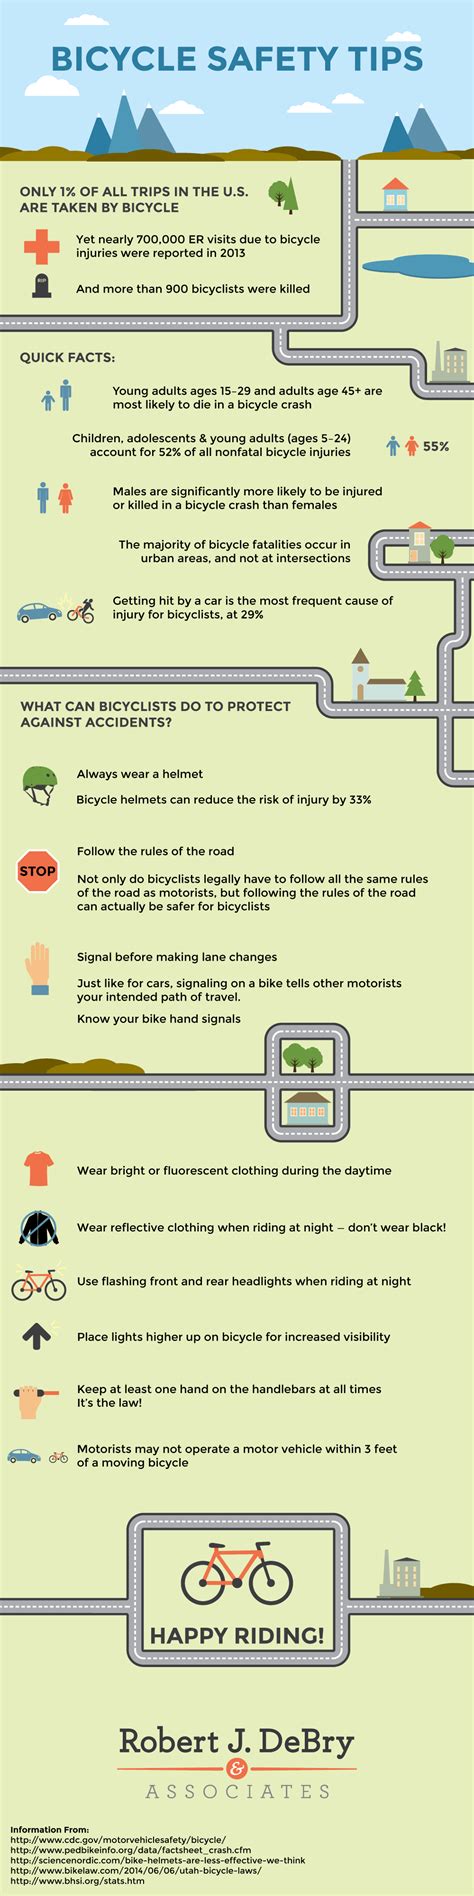 Bike Safety Tips Robert J Debry